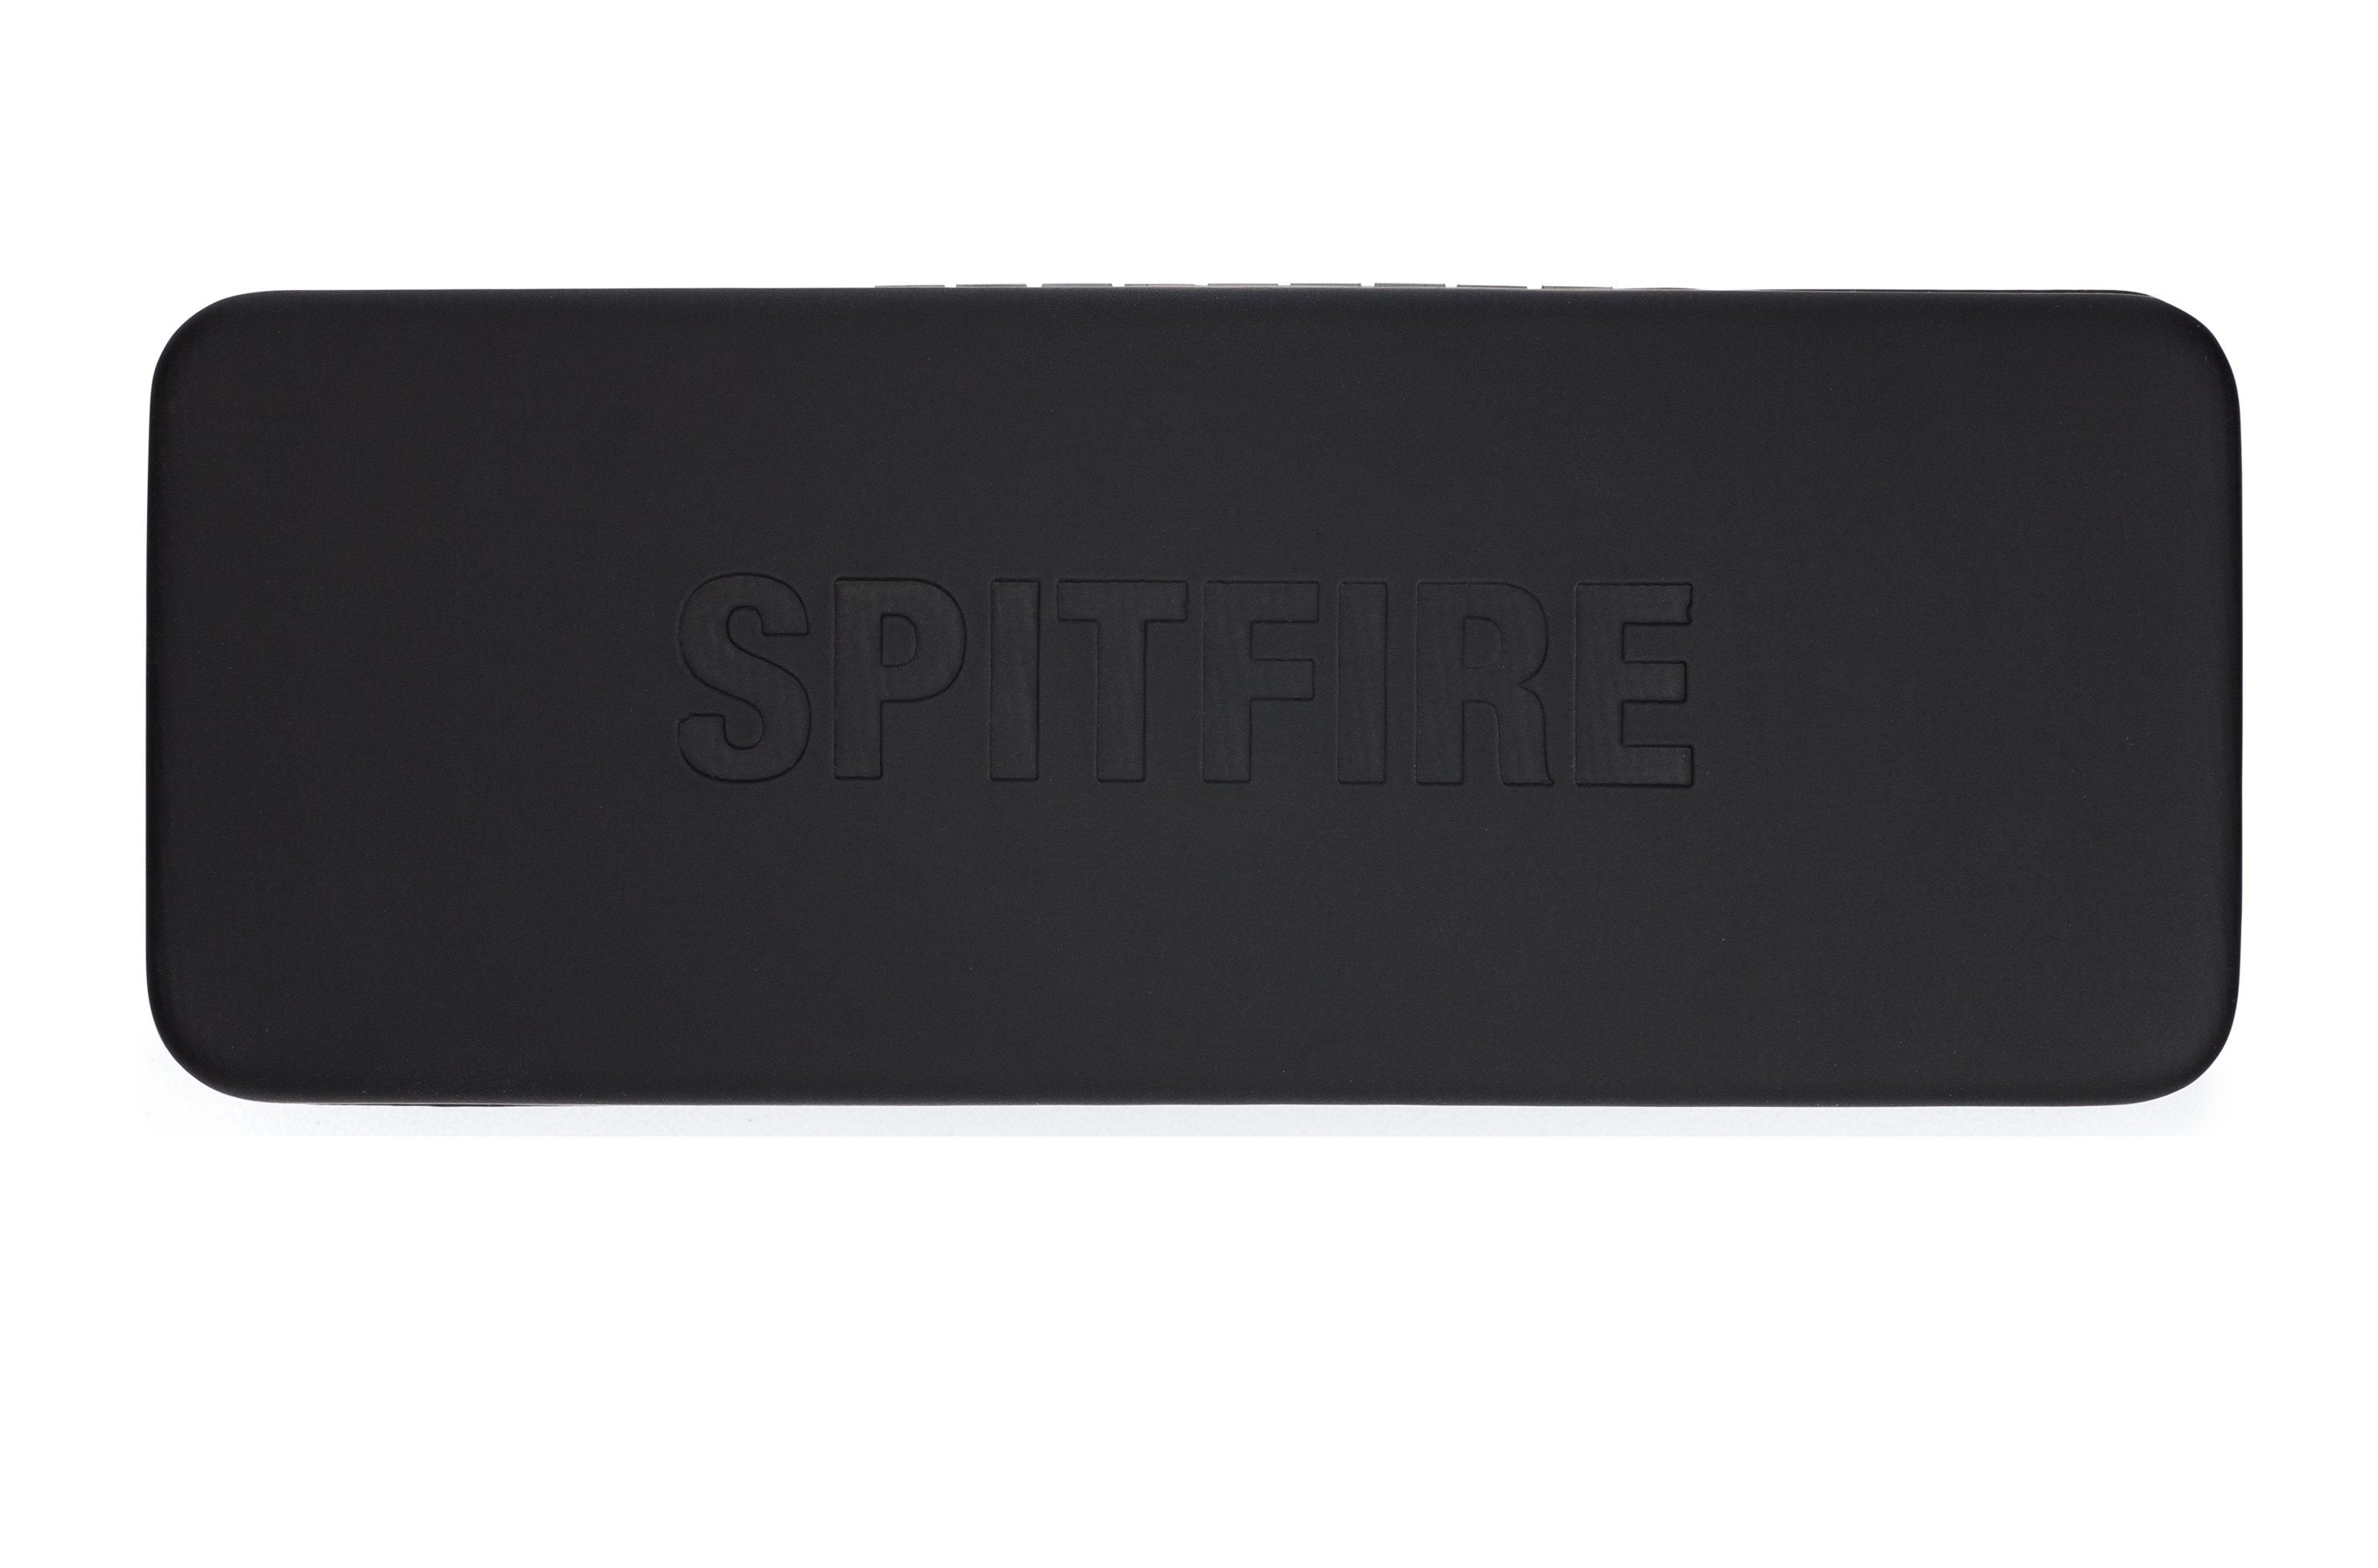 cut fifteen - Spitfire